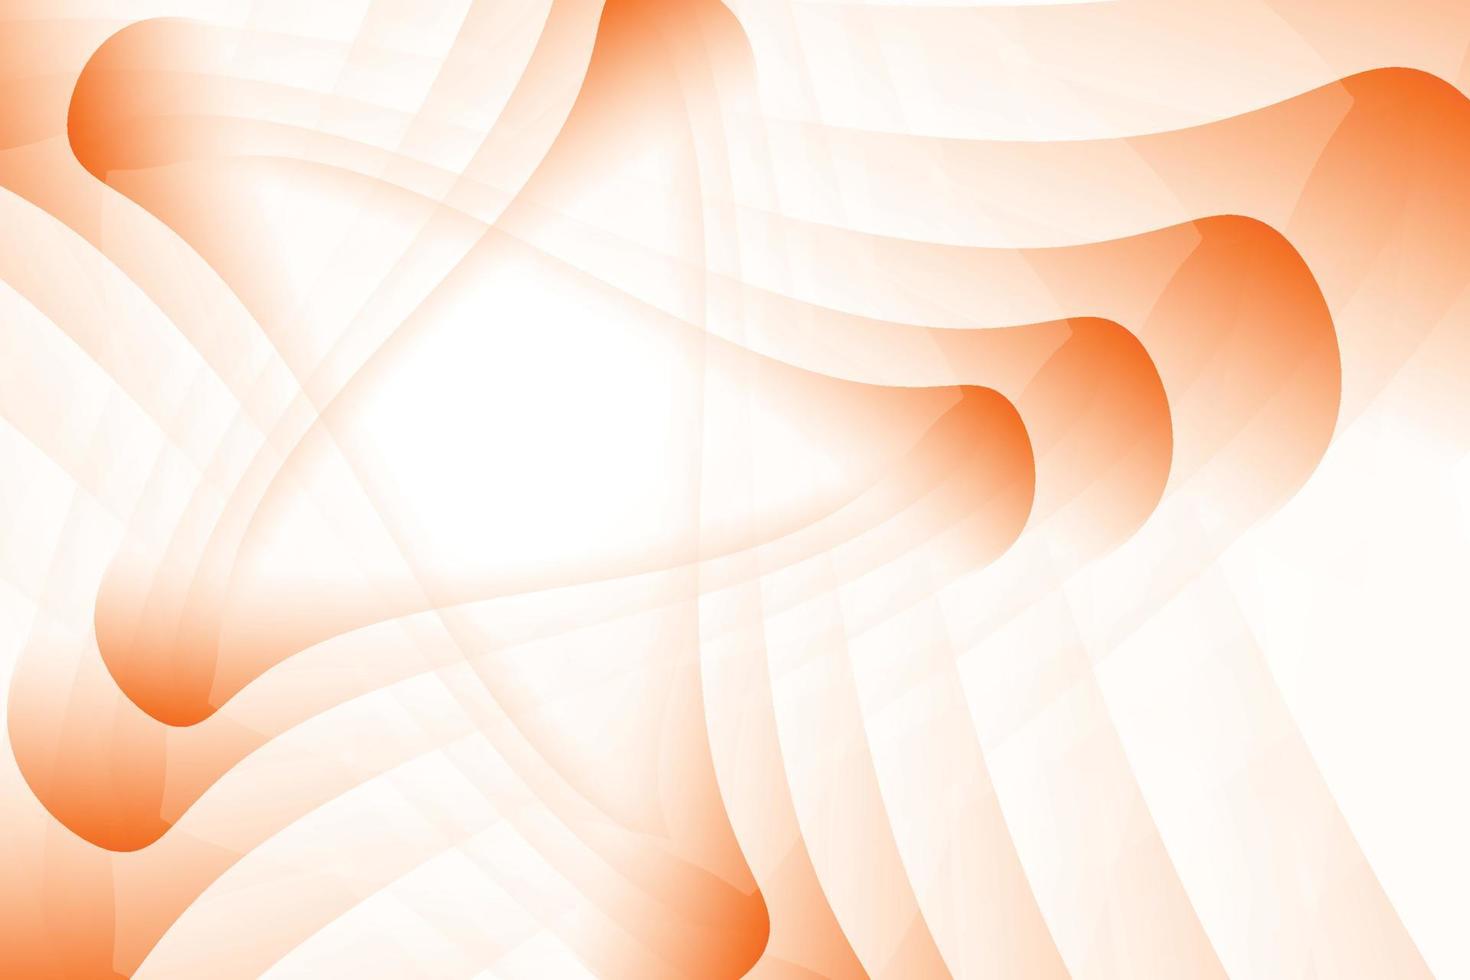 sfondo astratto di colore arancione e bianco a forma di stella. illustrazione vettoriale. vettore